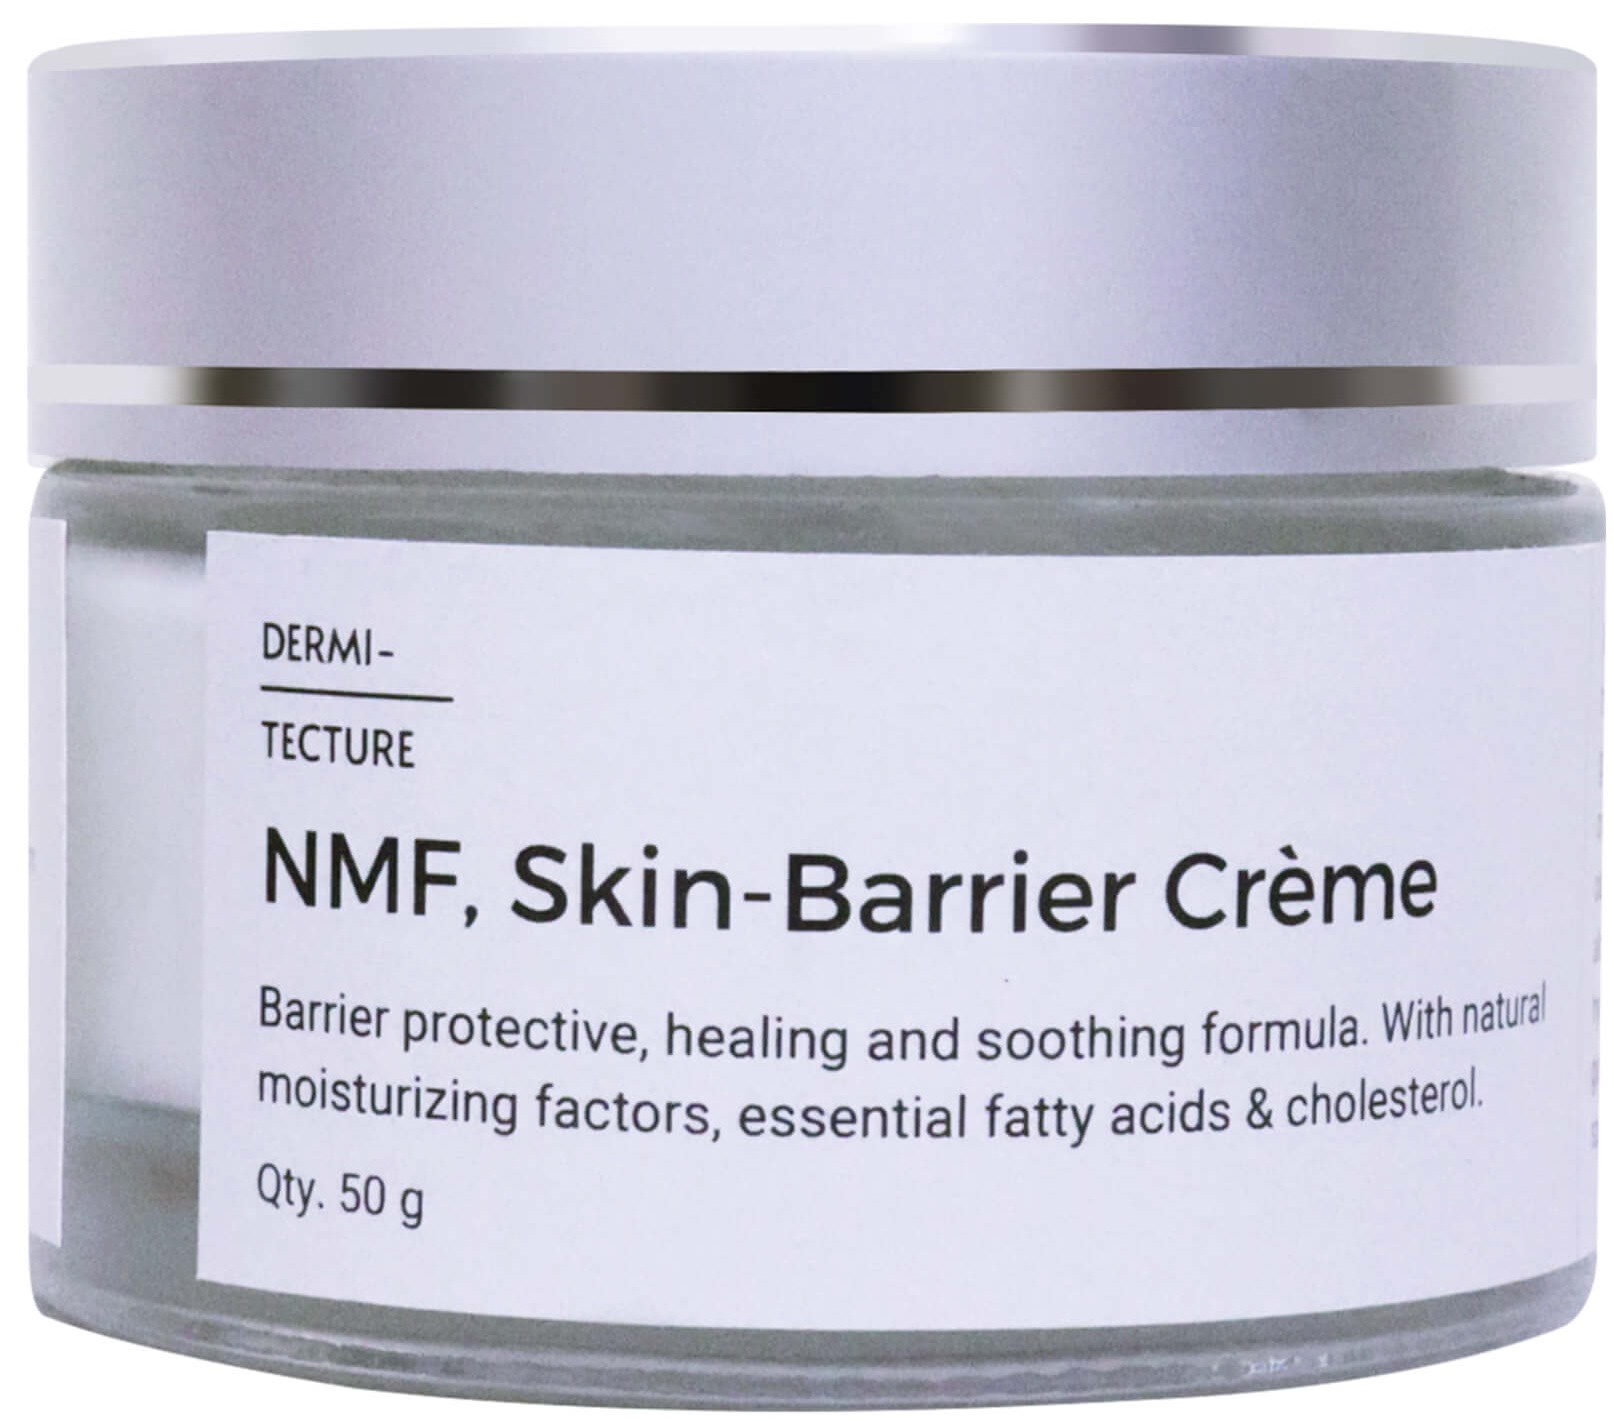 Dermitecture NMF, Skin-barrier Crème